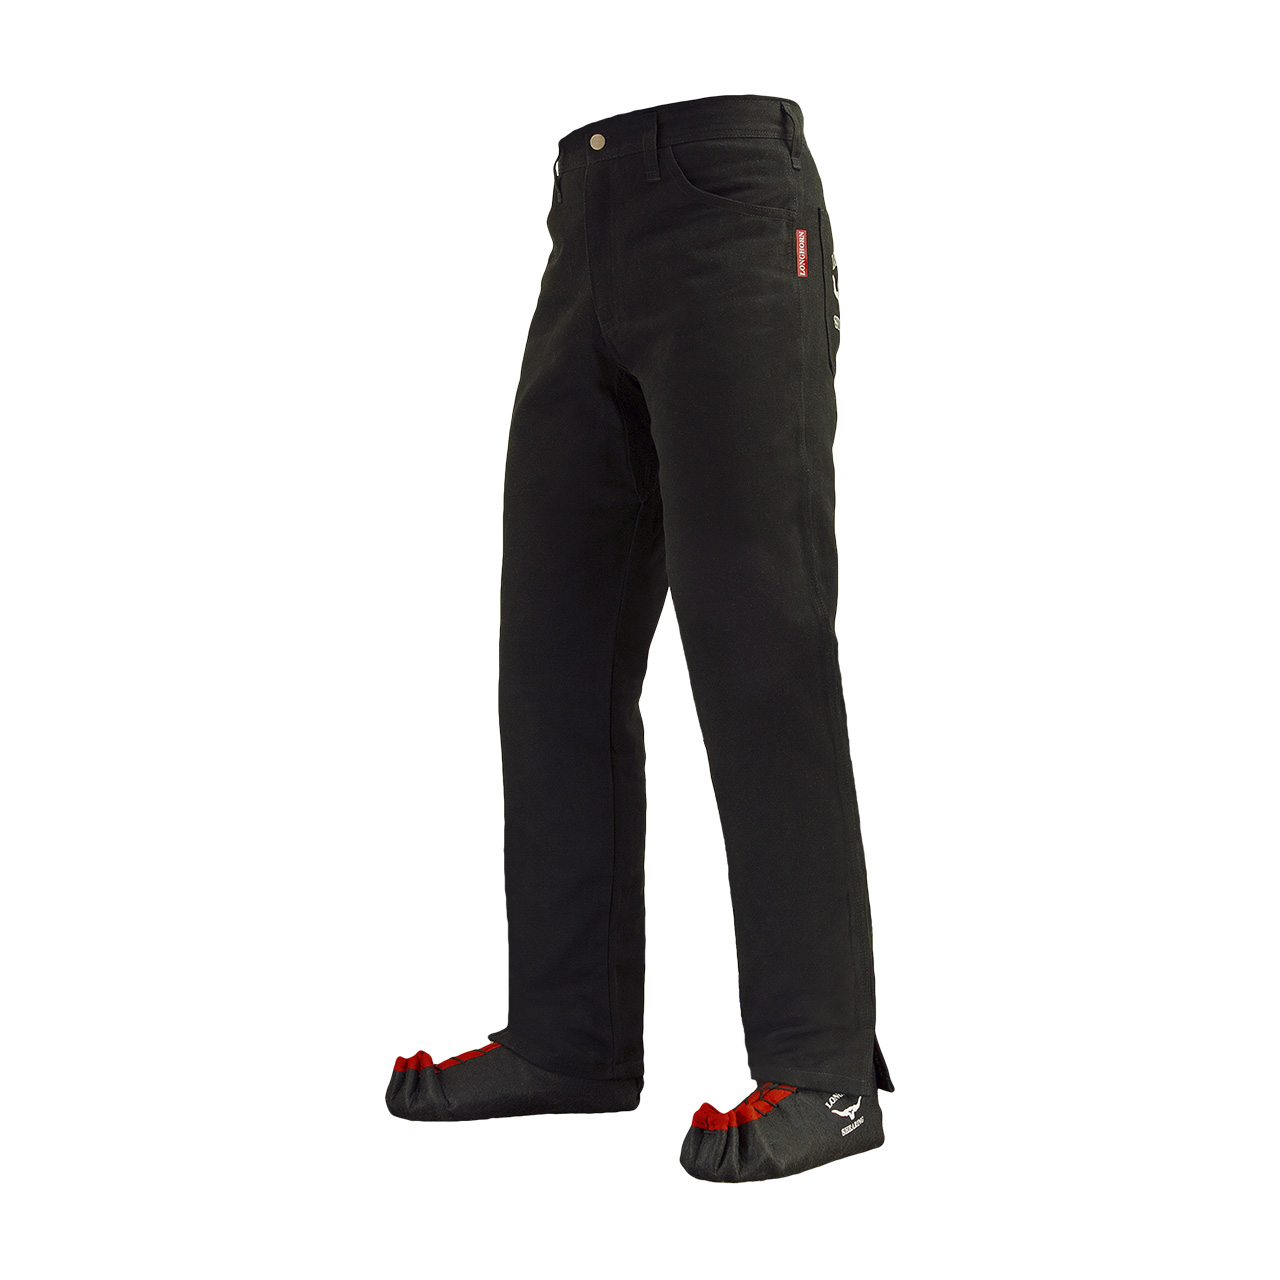 Longhorn™ kalhoty pro střihače ovcí s 2 předními kapsami velikost Short 36/28 6S